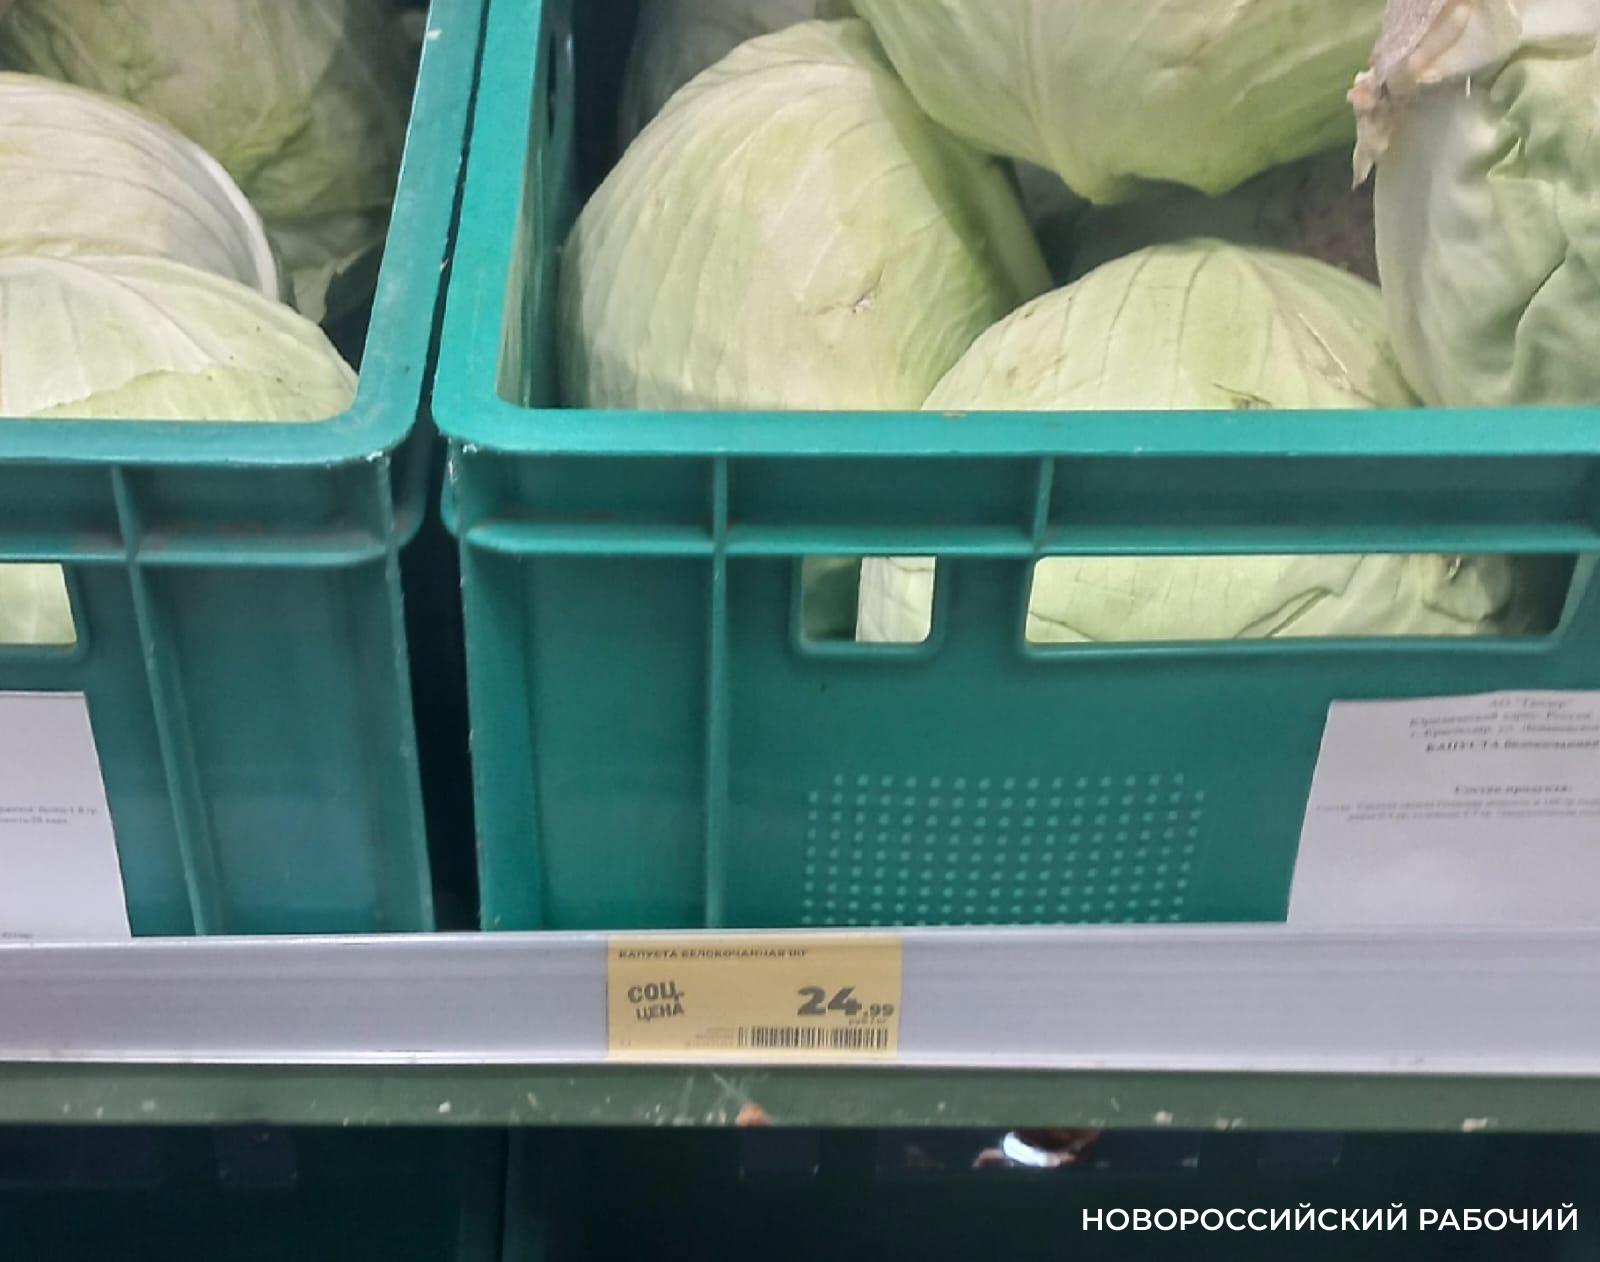 На рынках Новороссийска капуста дороже, чем в магазинах